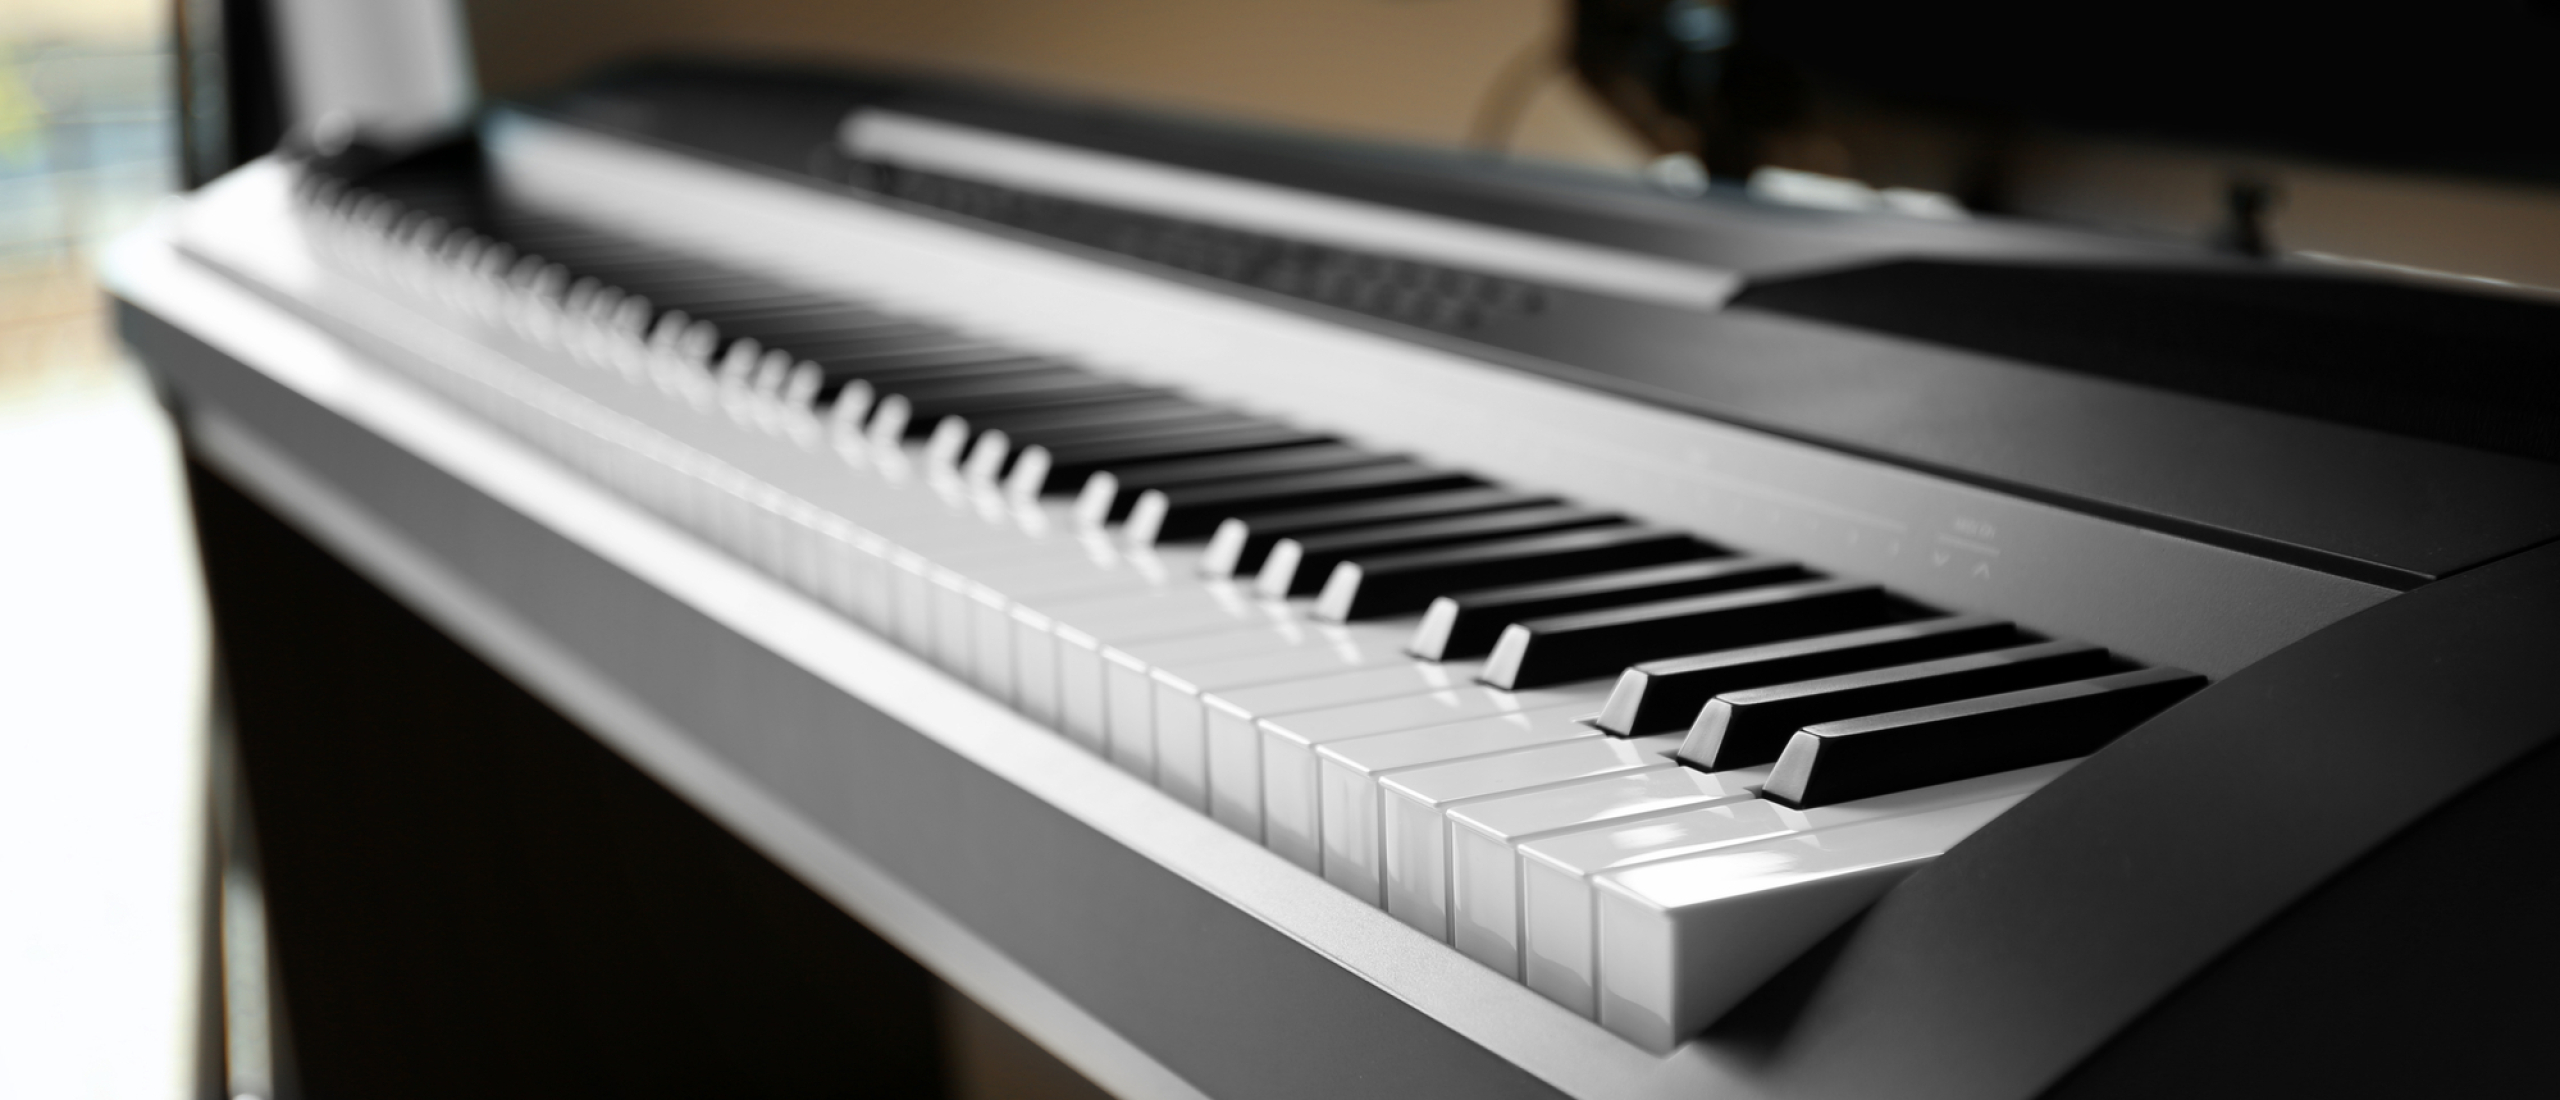 Welke digitale piano kopen? Ontdek de beste keuzes voor muziekliefhebbers